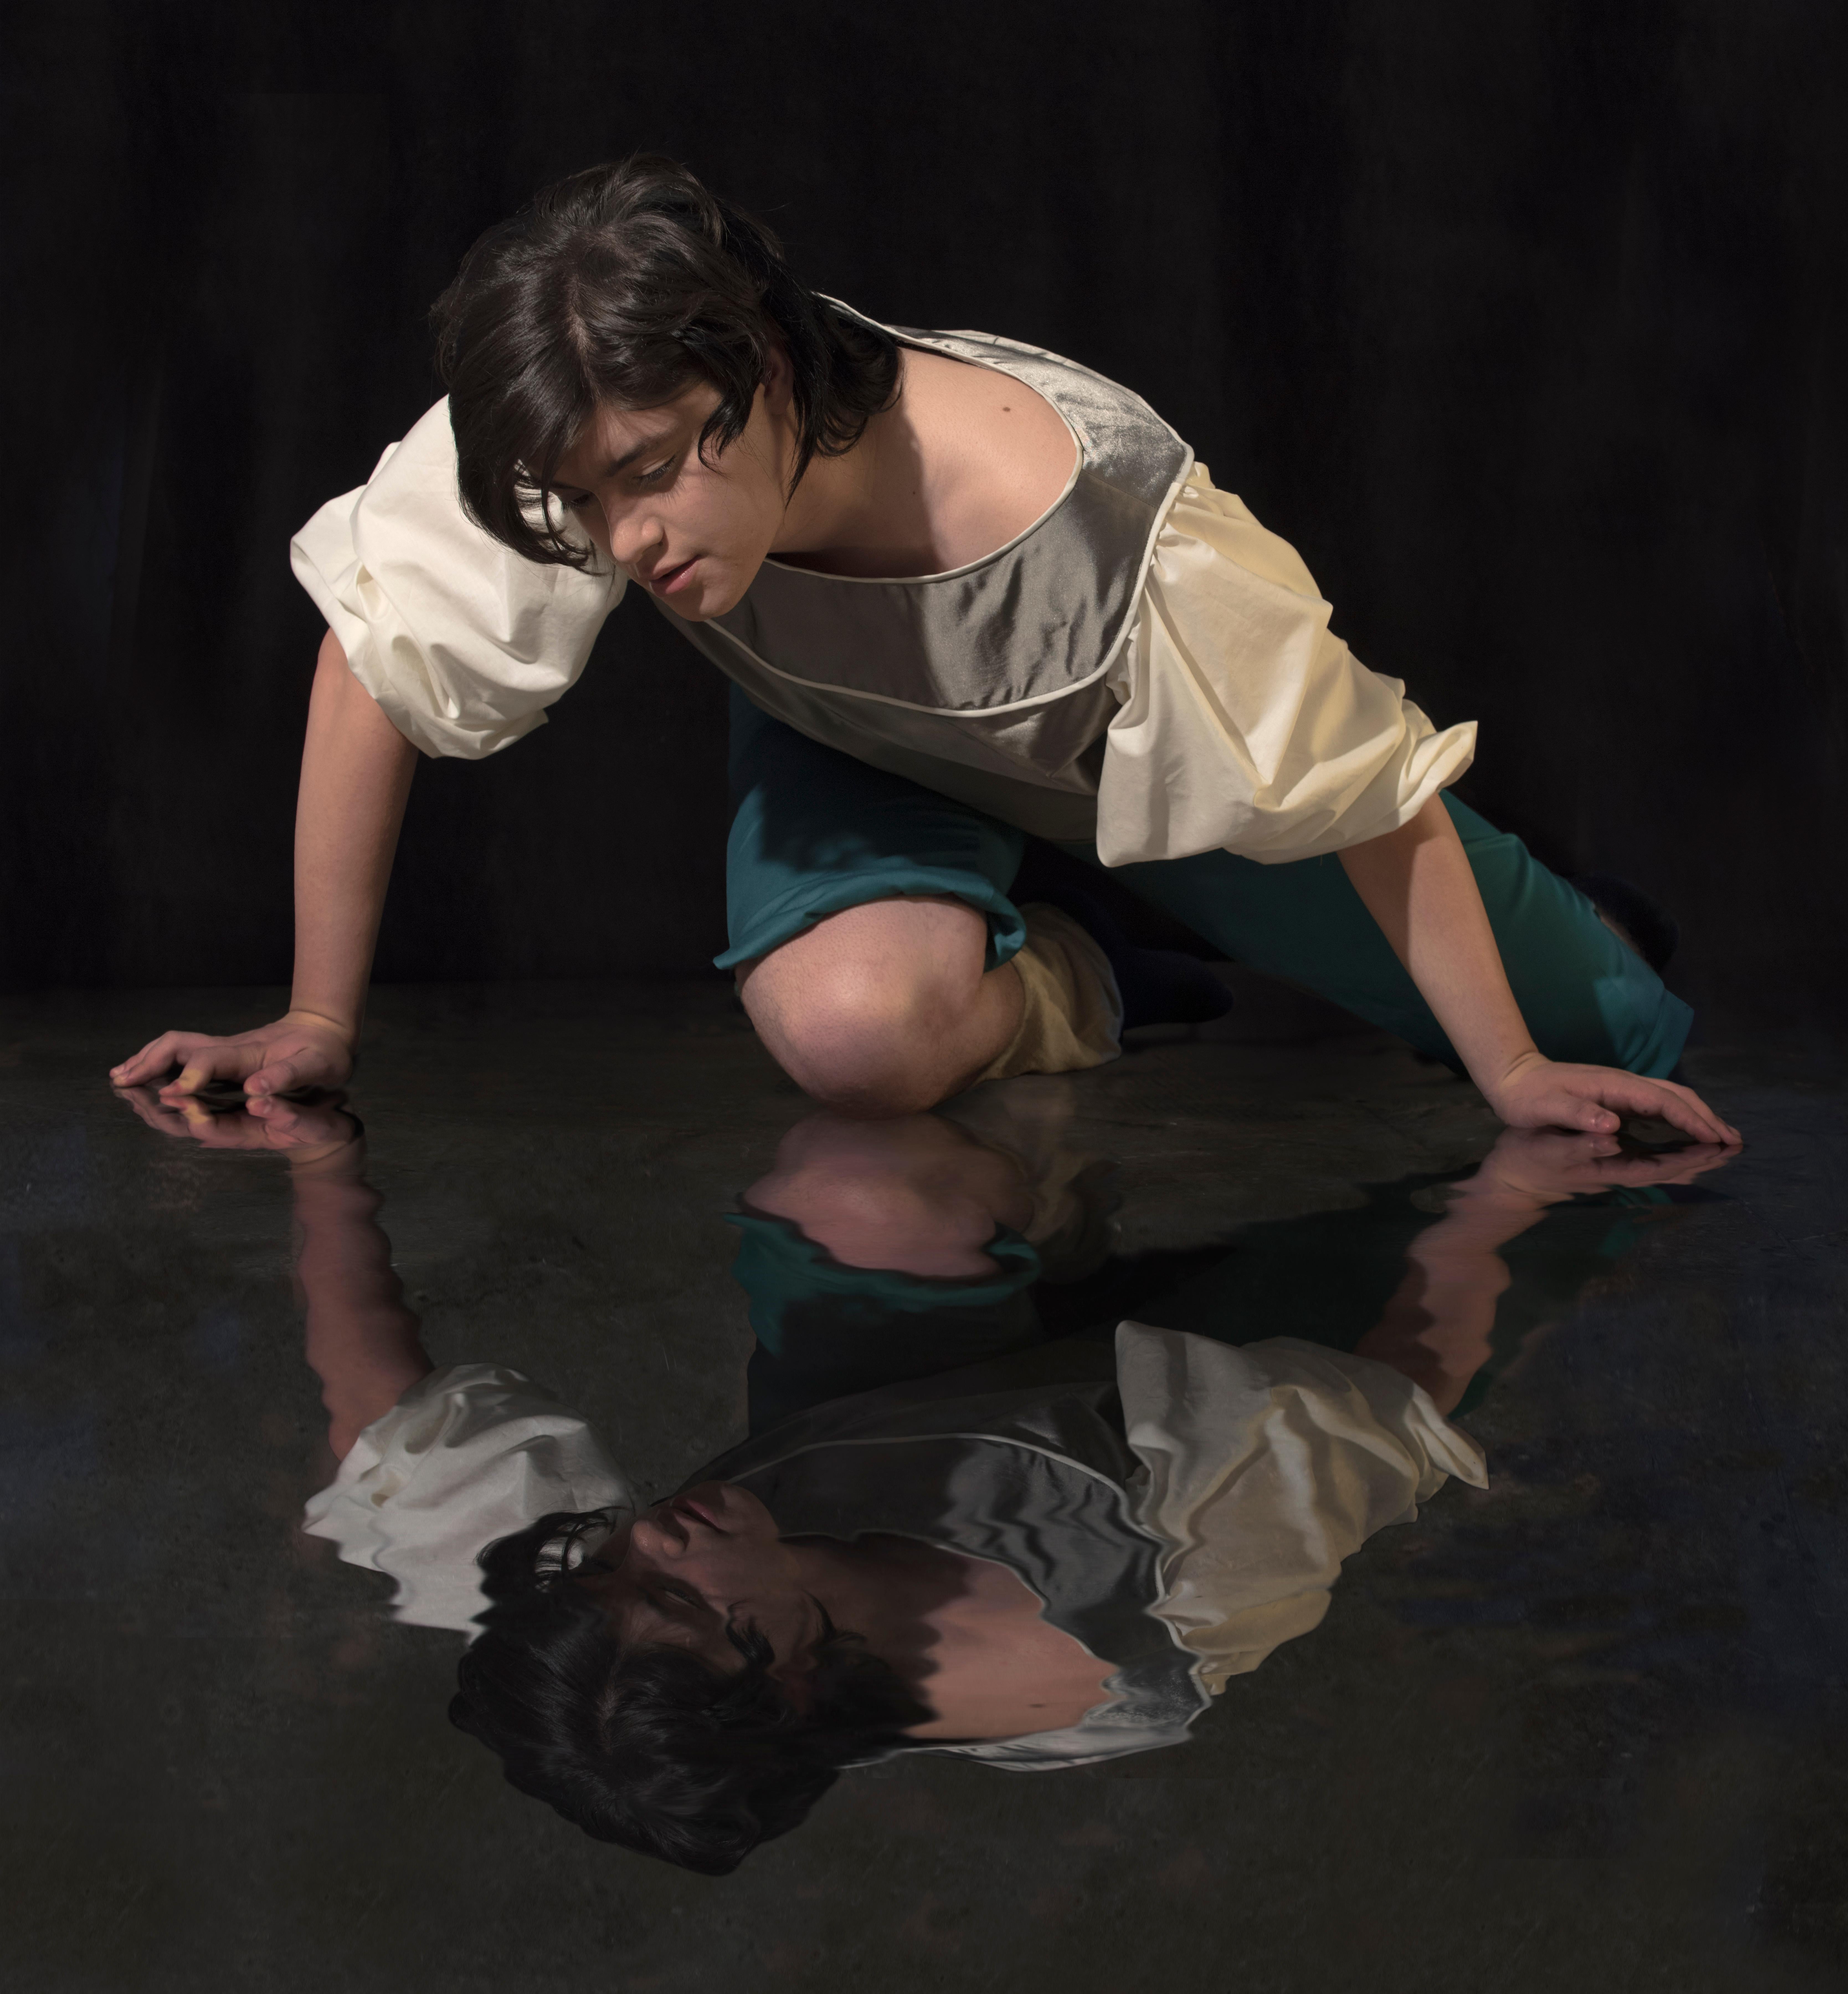 E2 - Kleinveld & Julien Figurative Photograph - Ode to Caravaggio's Narcissus